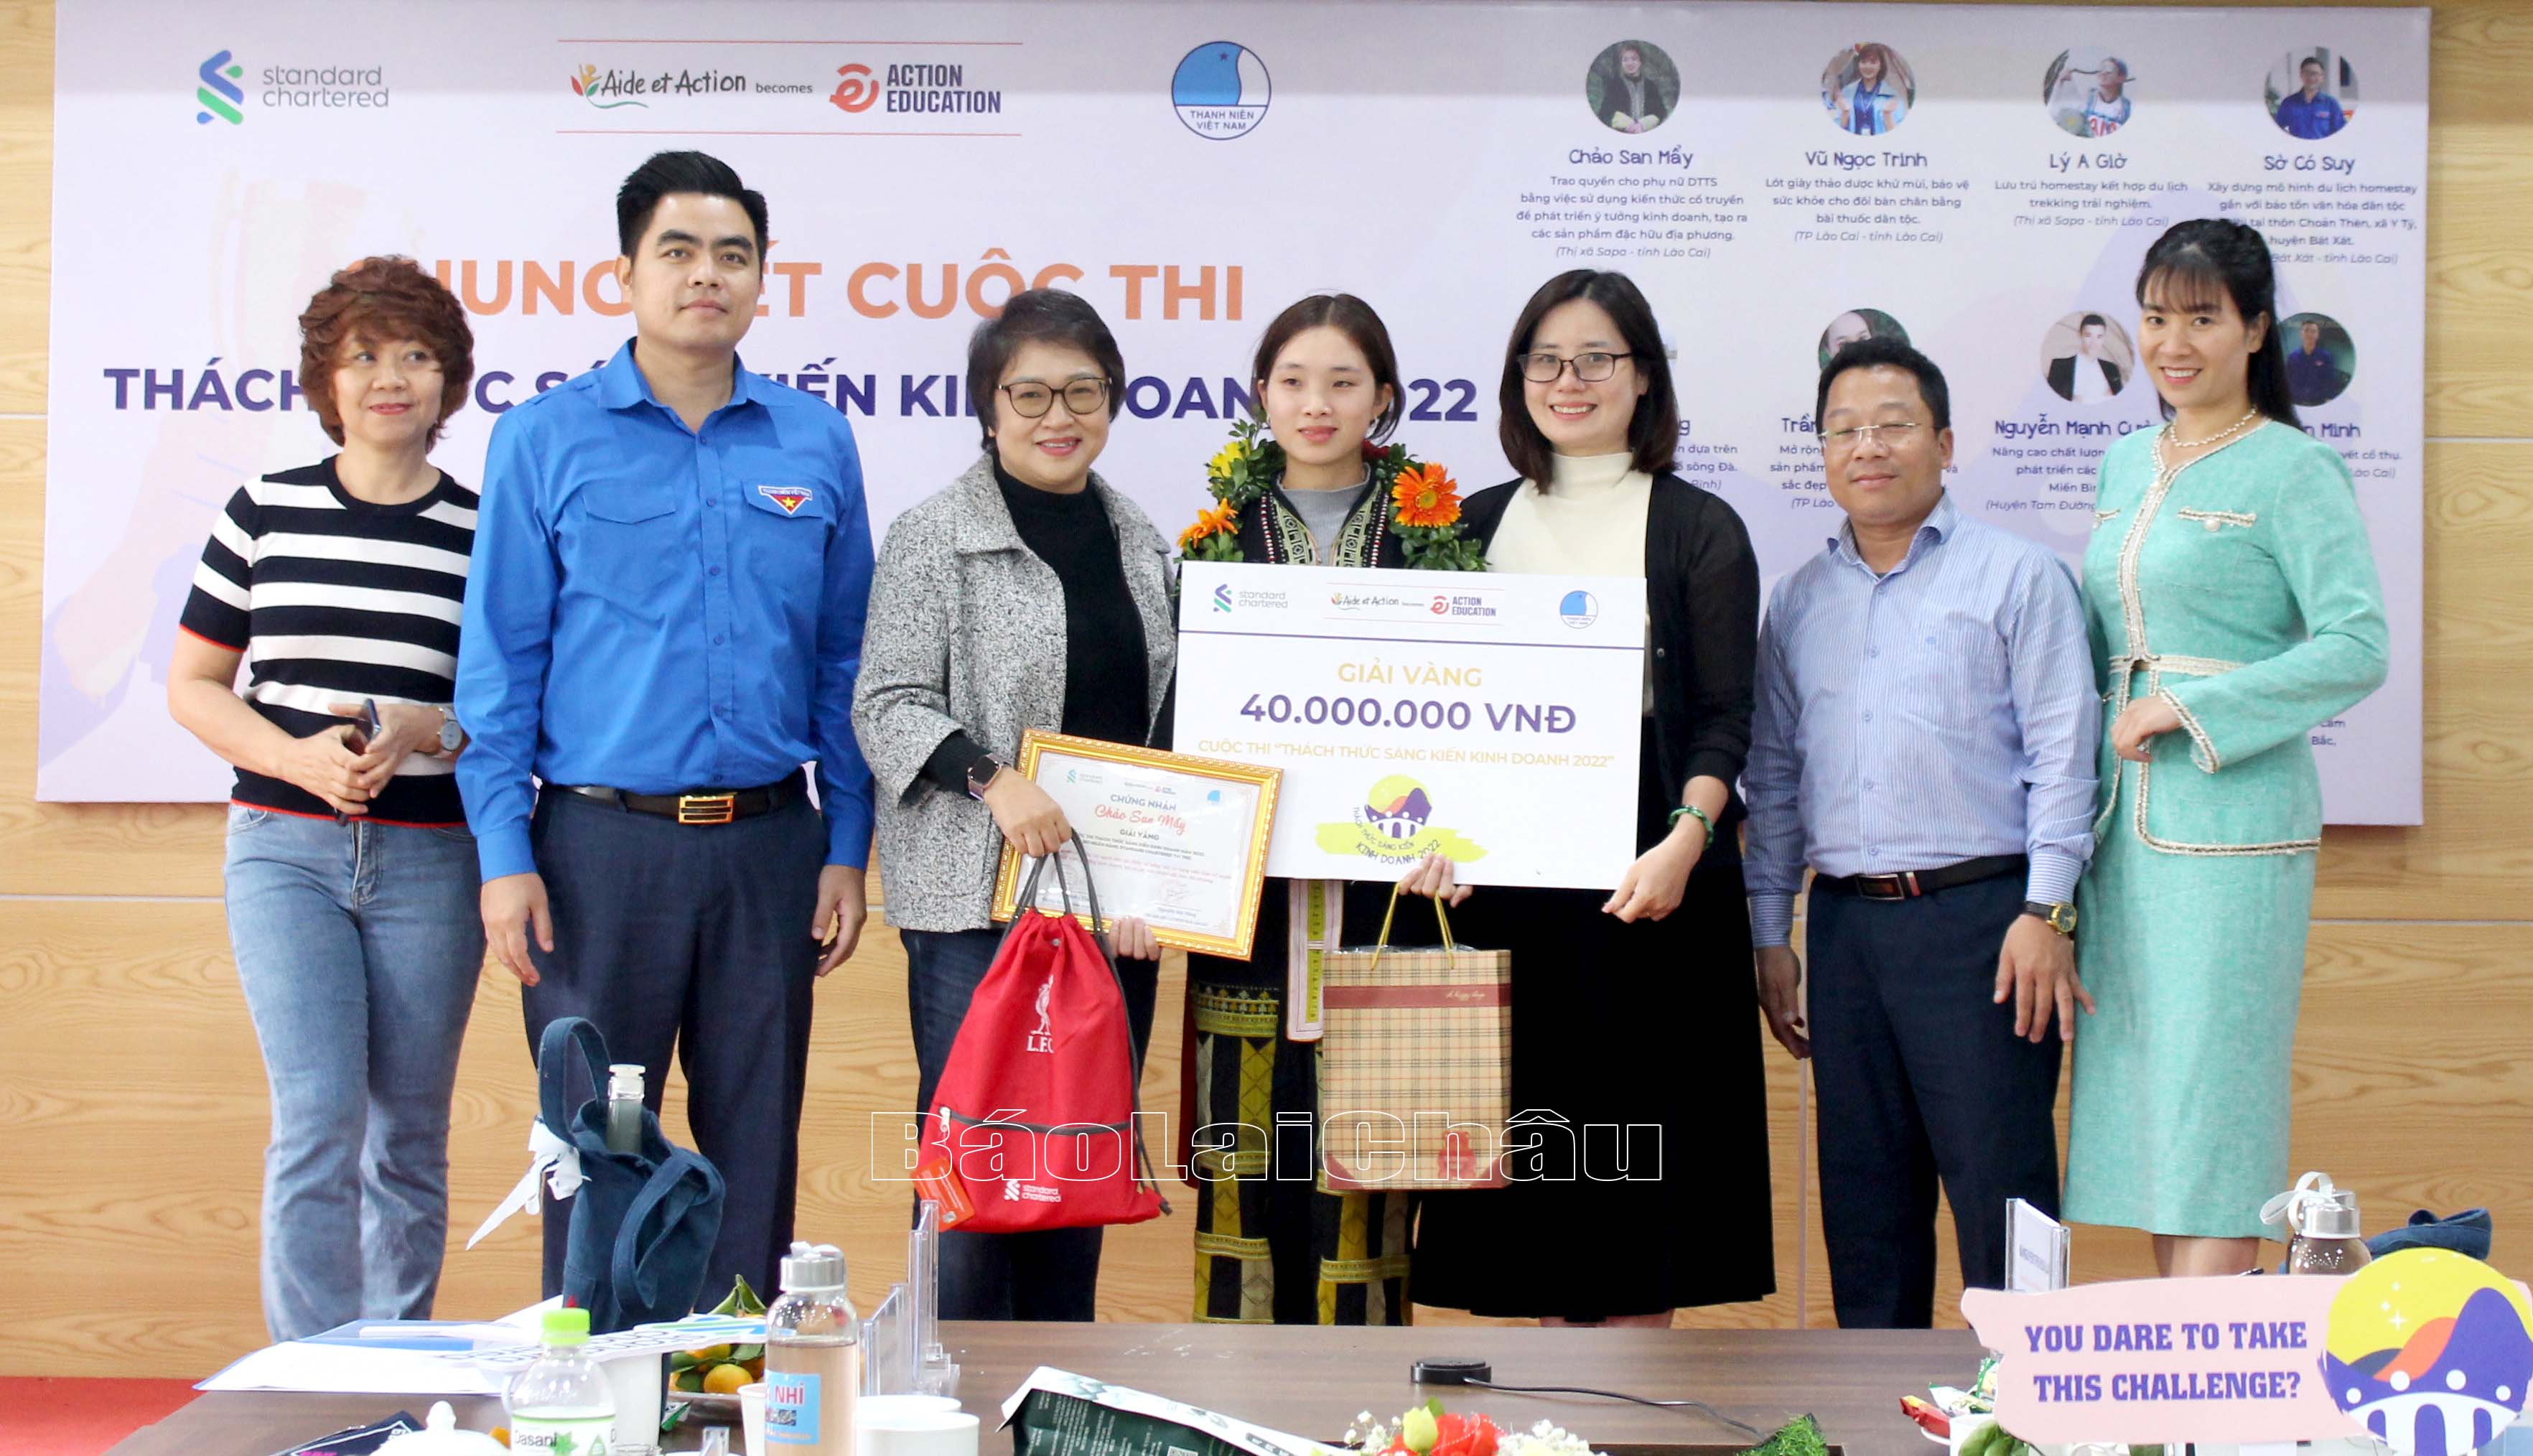 Ban tổ chức trao giải Vàng cho dự án của tác giả Chảo San Mẩy.